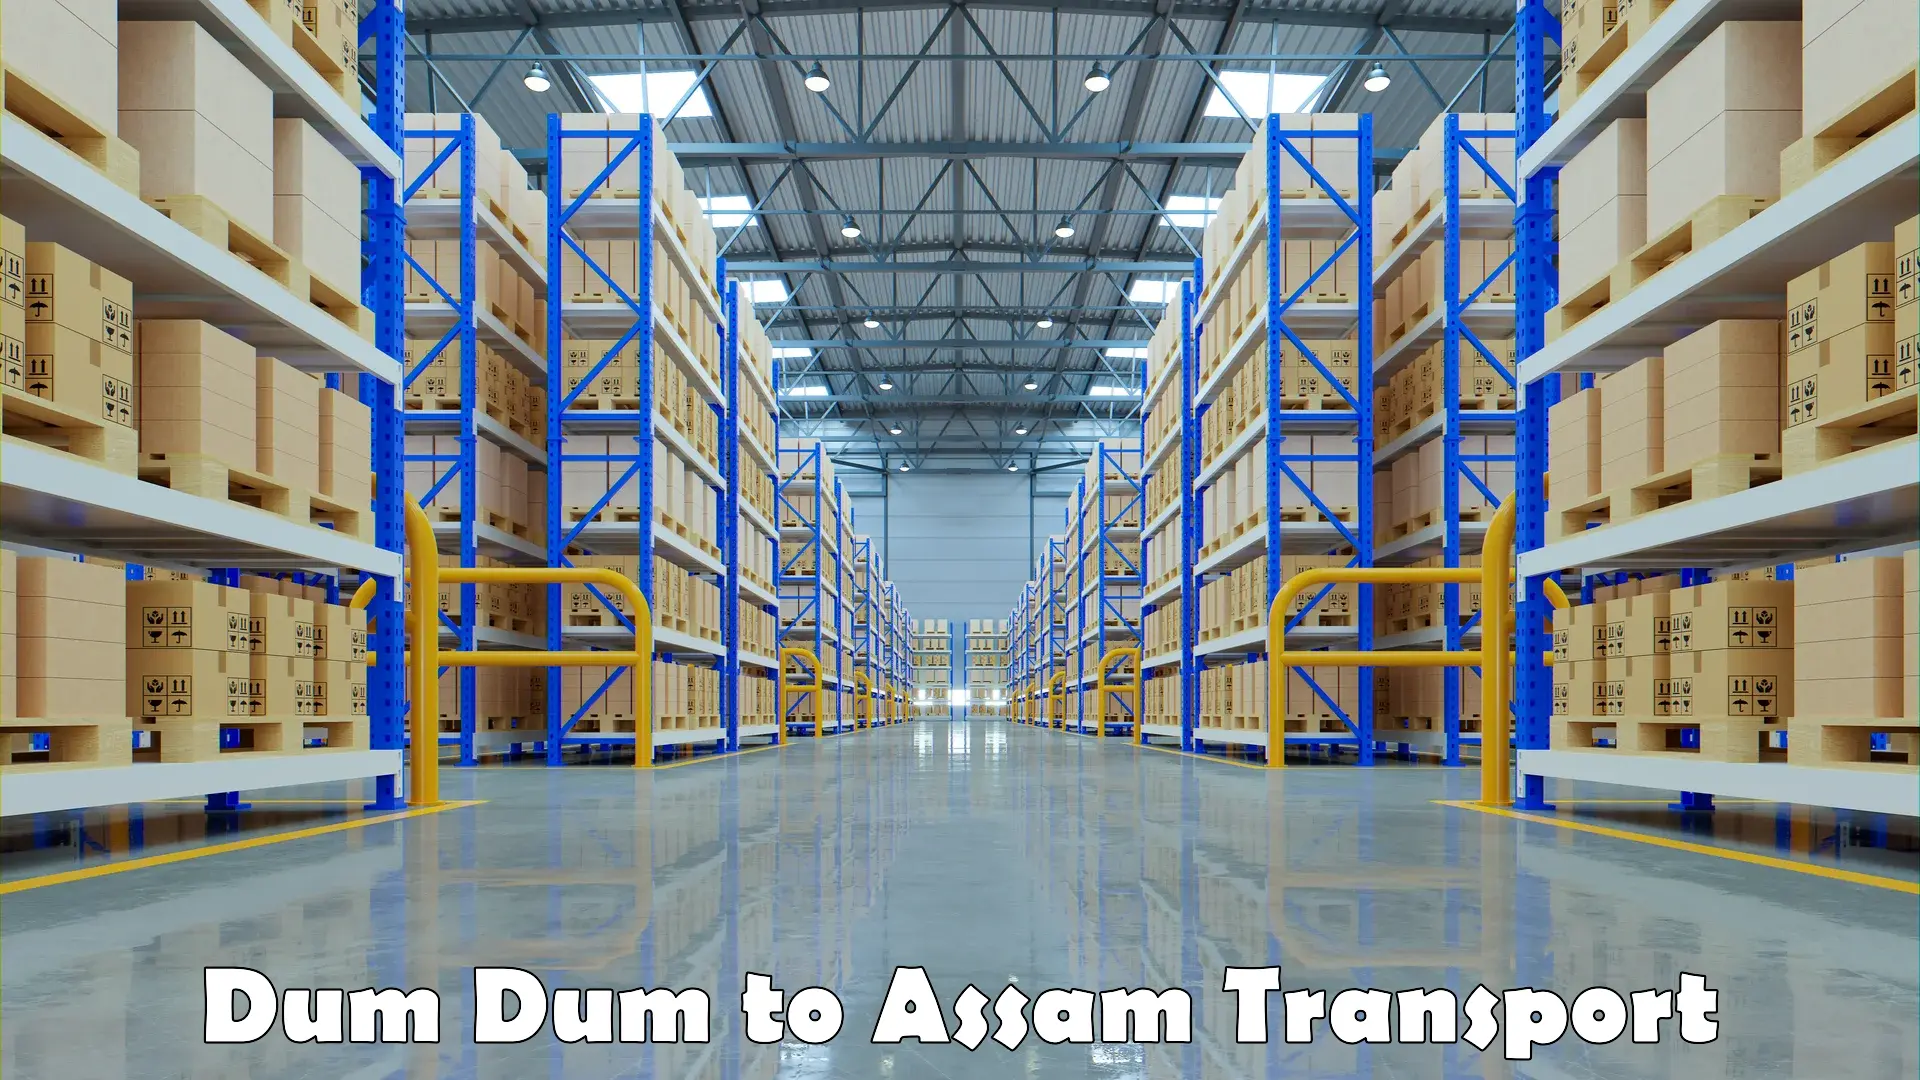 Cycle transportation service Dum Dum to Assam